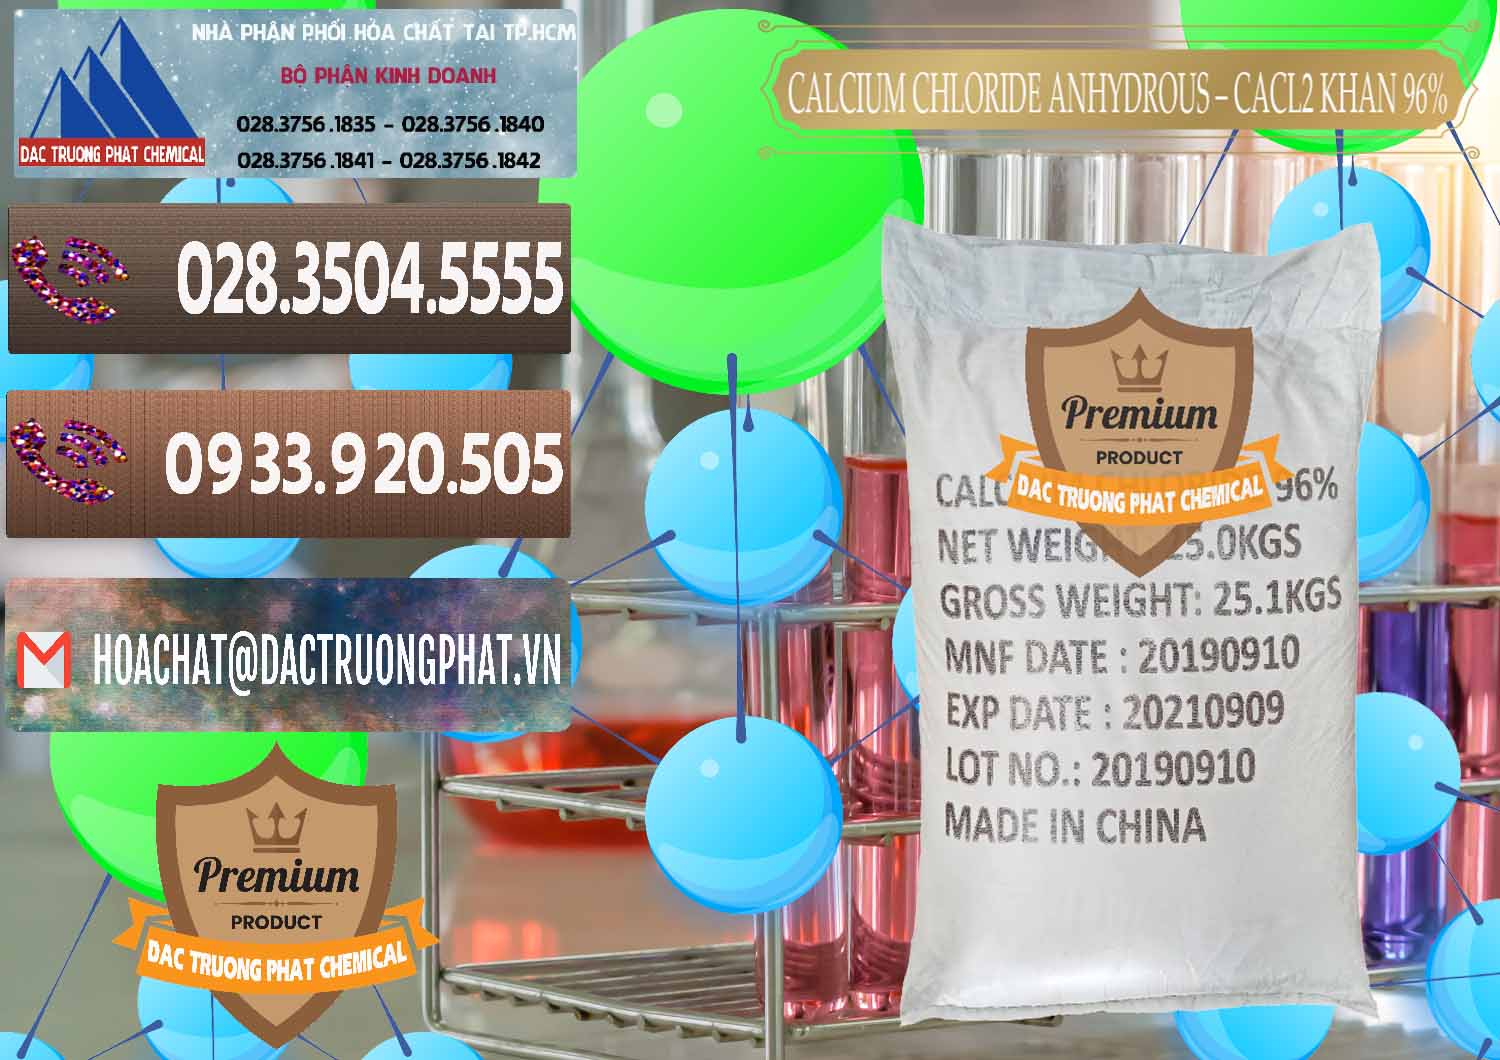 Cty chuyên kinh doanh _ bán CaCl2 – Canxi Clorua Anhydrous Khan 96% Trung Quốc China - 0043 - Công ty nhập khẩu _ cung cấp hóa chất tại TP.HCM - hoachatviet.net